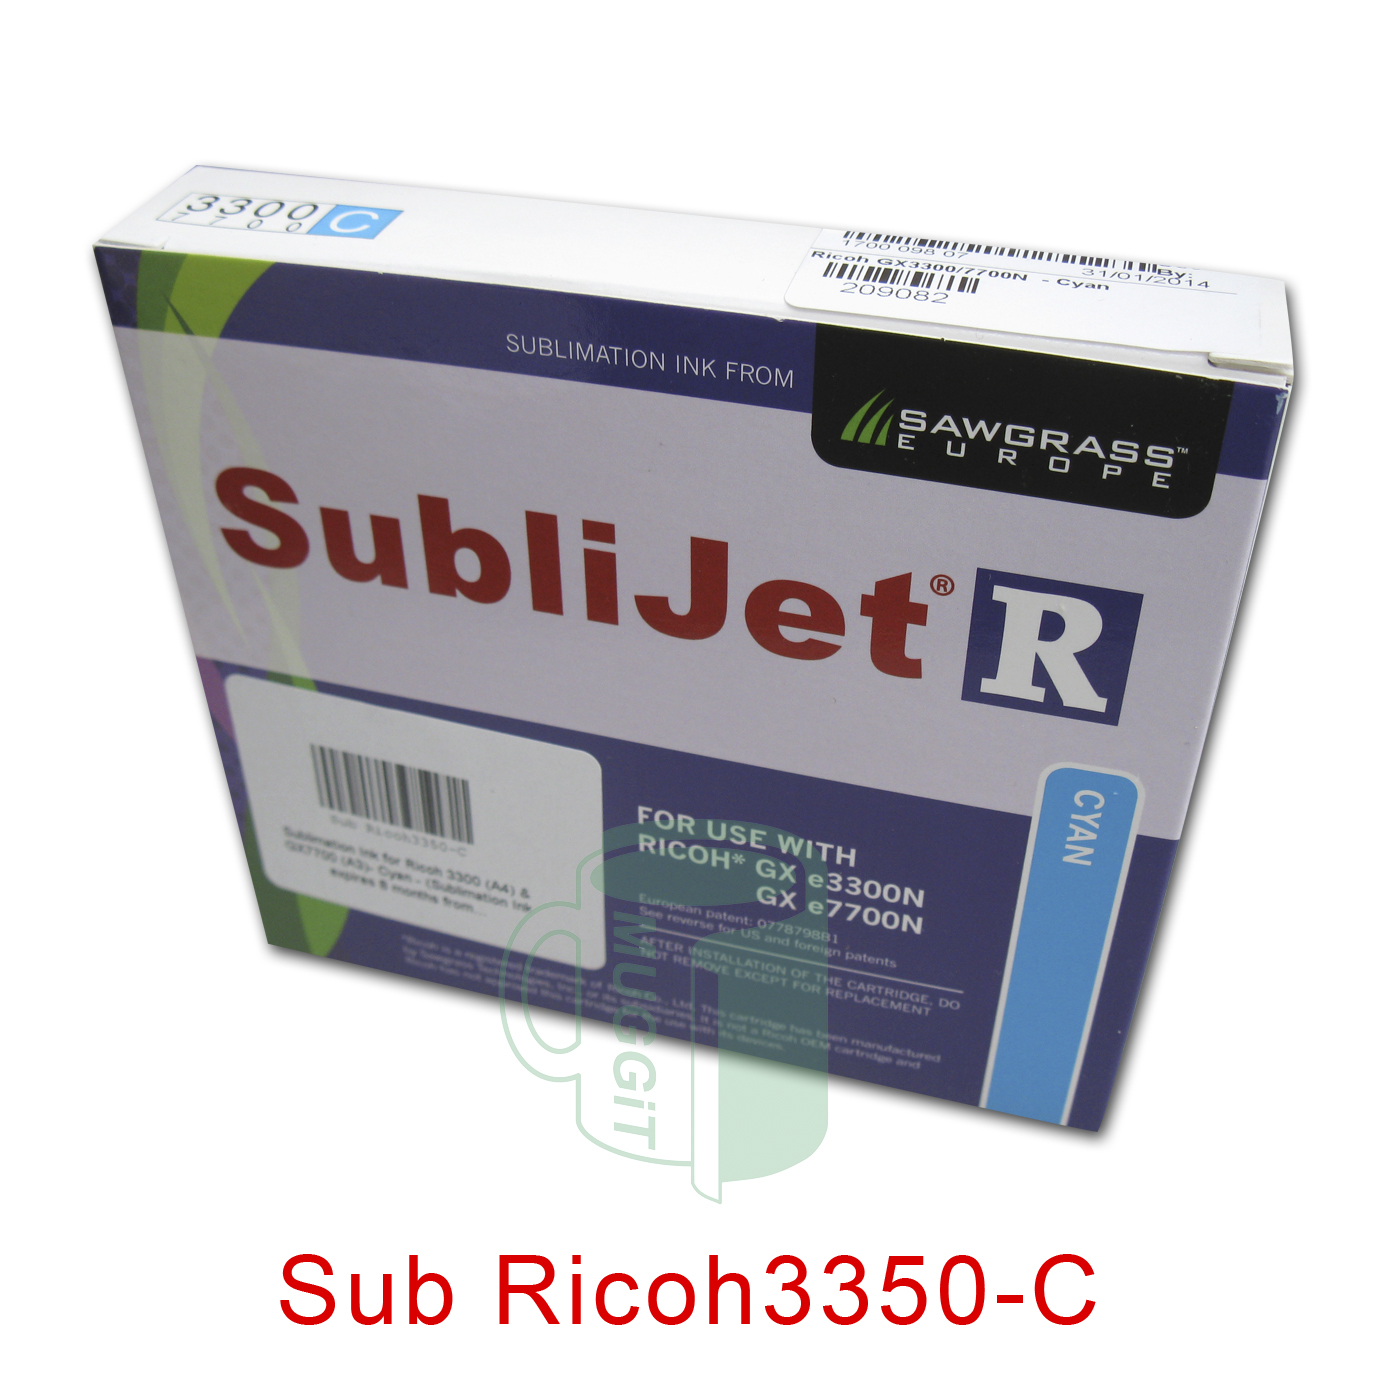 Sub Ricoh3350-C